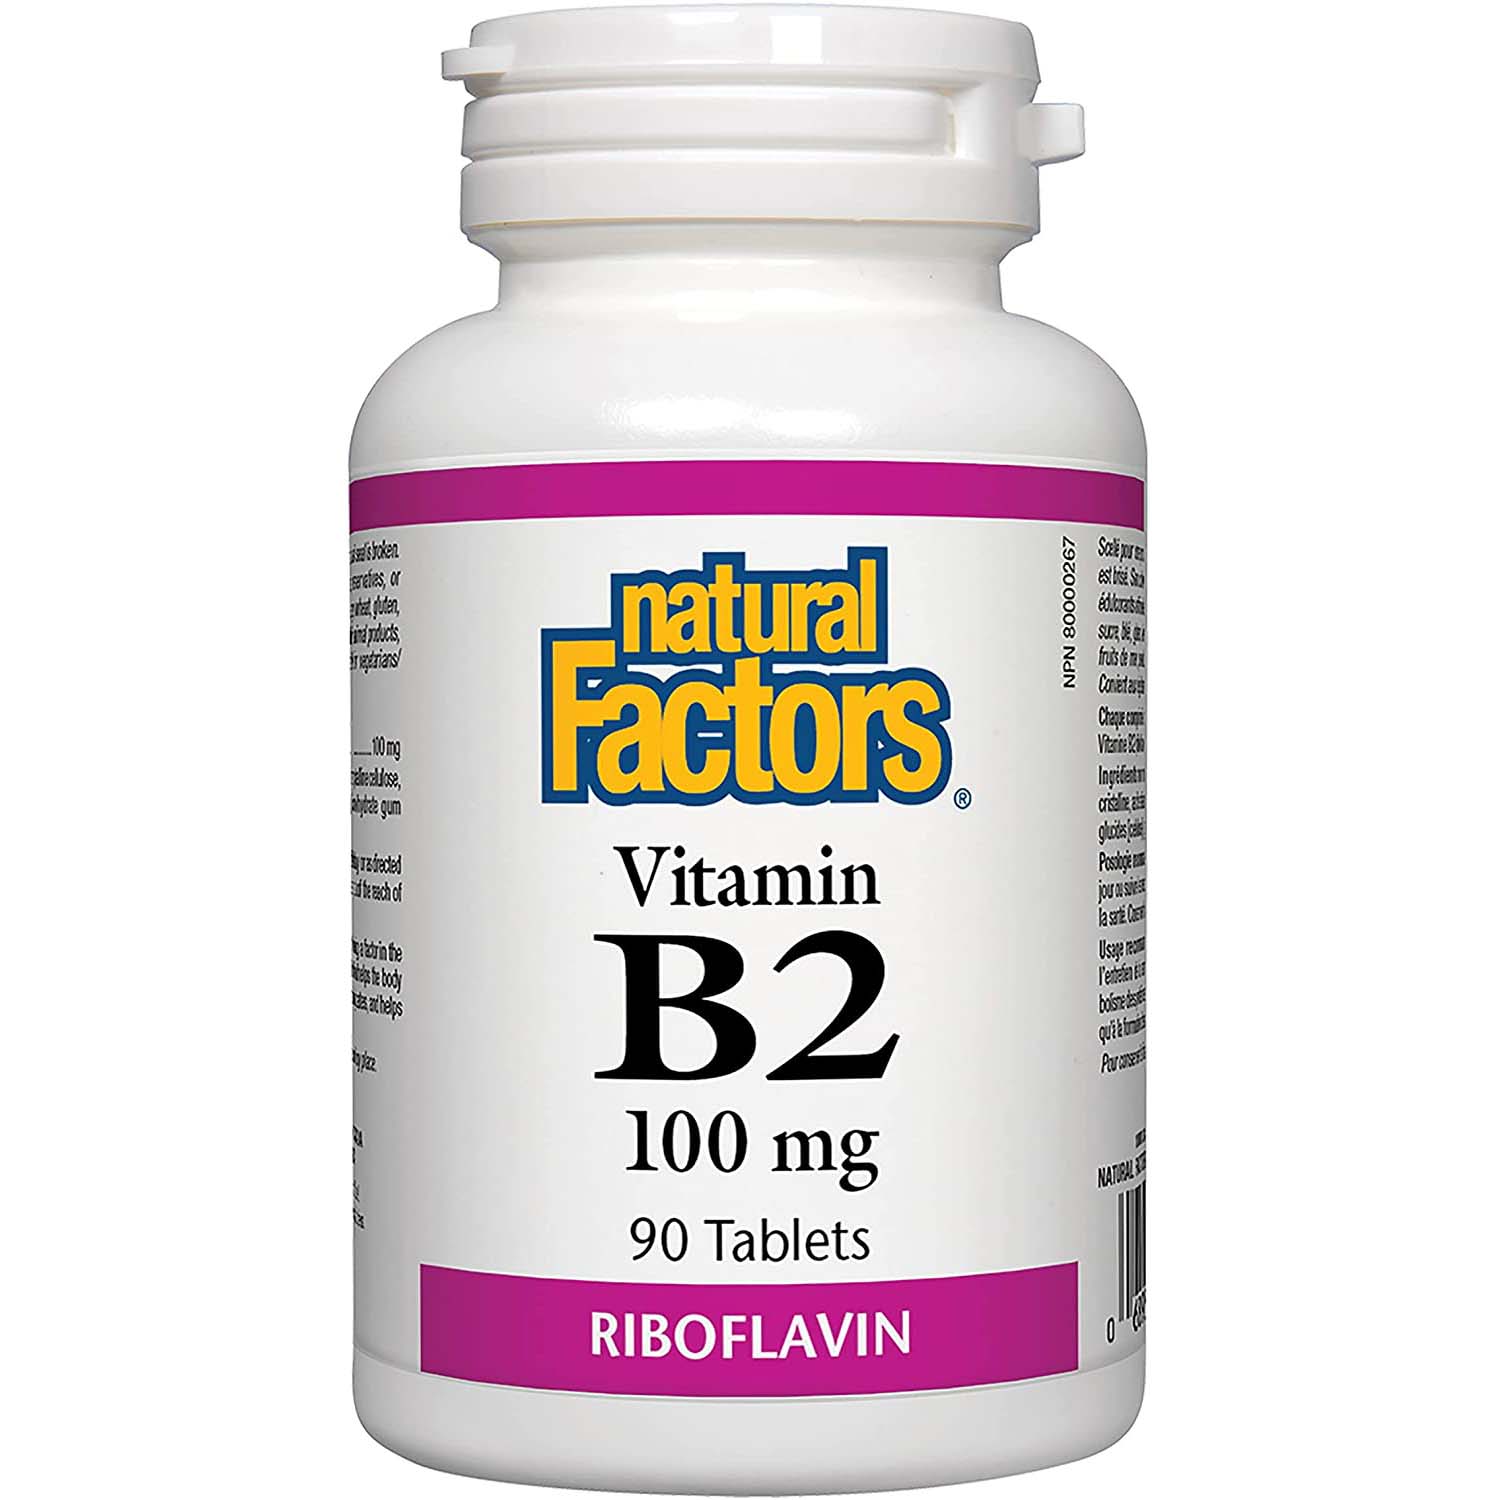 ناتشورال فاكتورز فيتامين ب 2 ريبوفلافين 90 حبة 100 ملجم